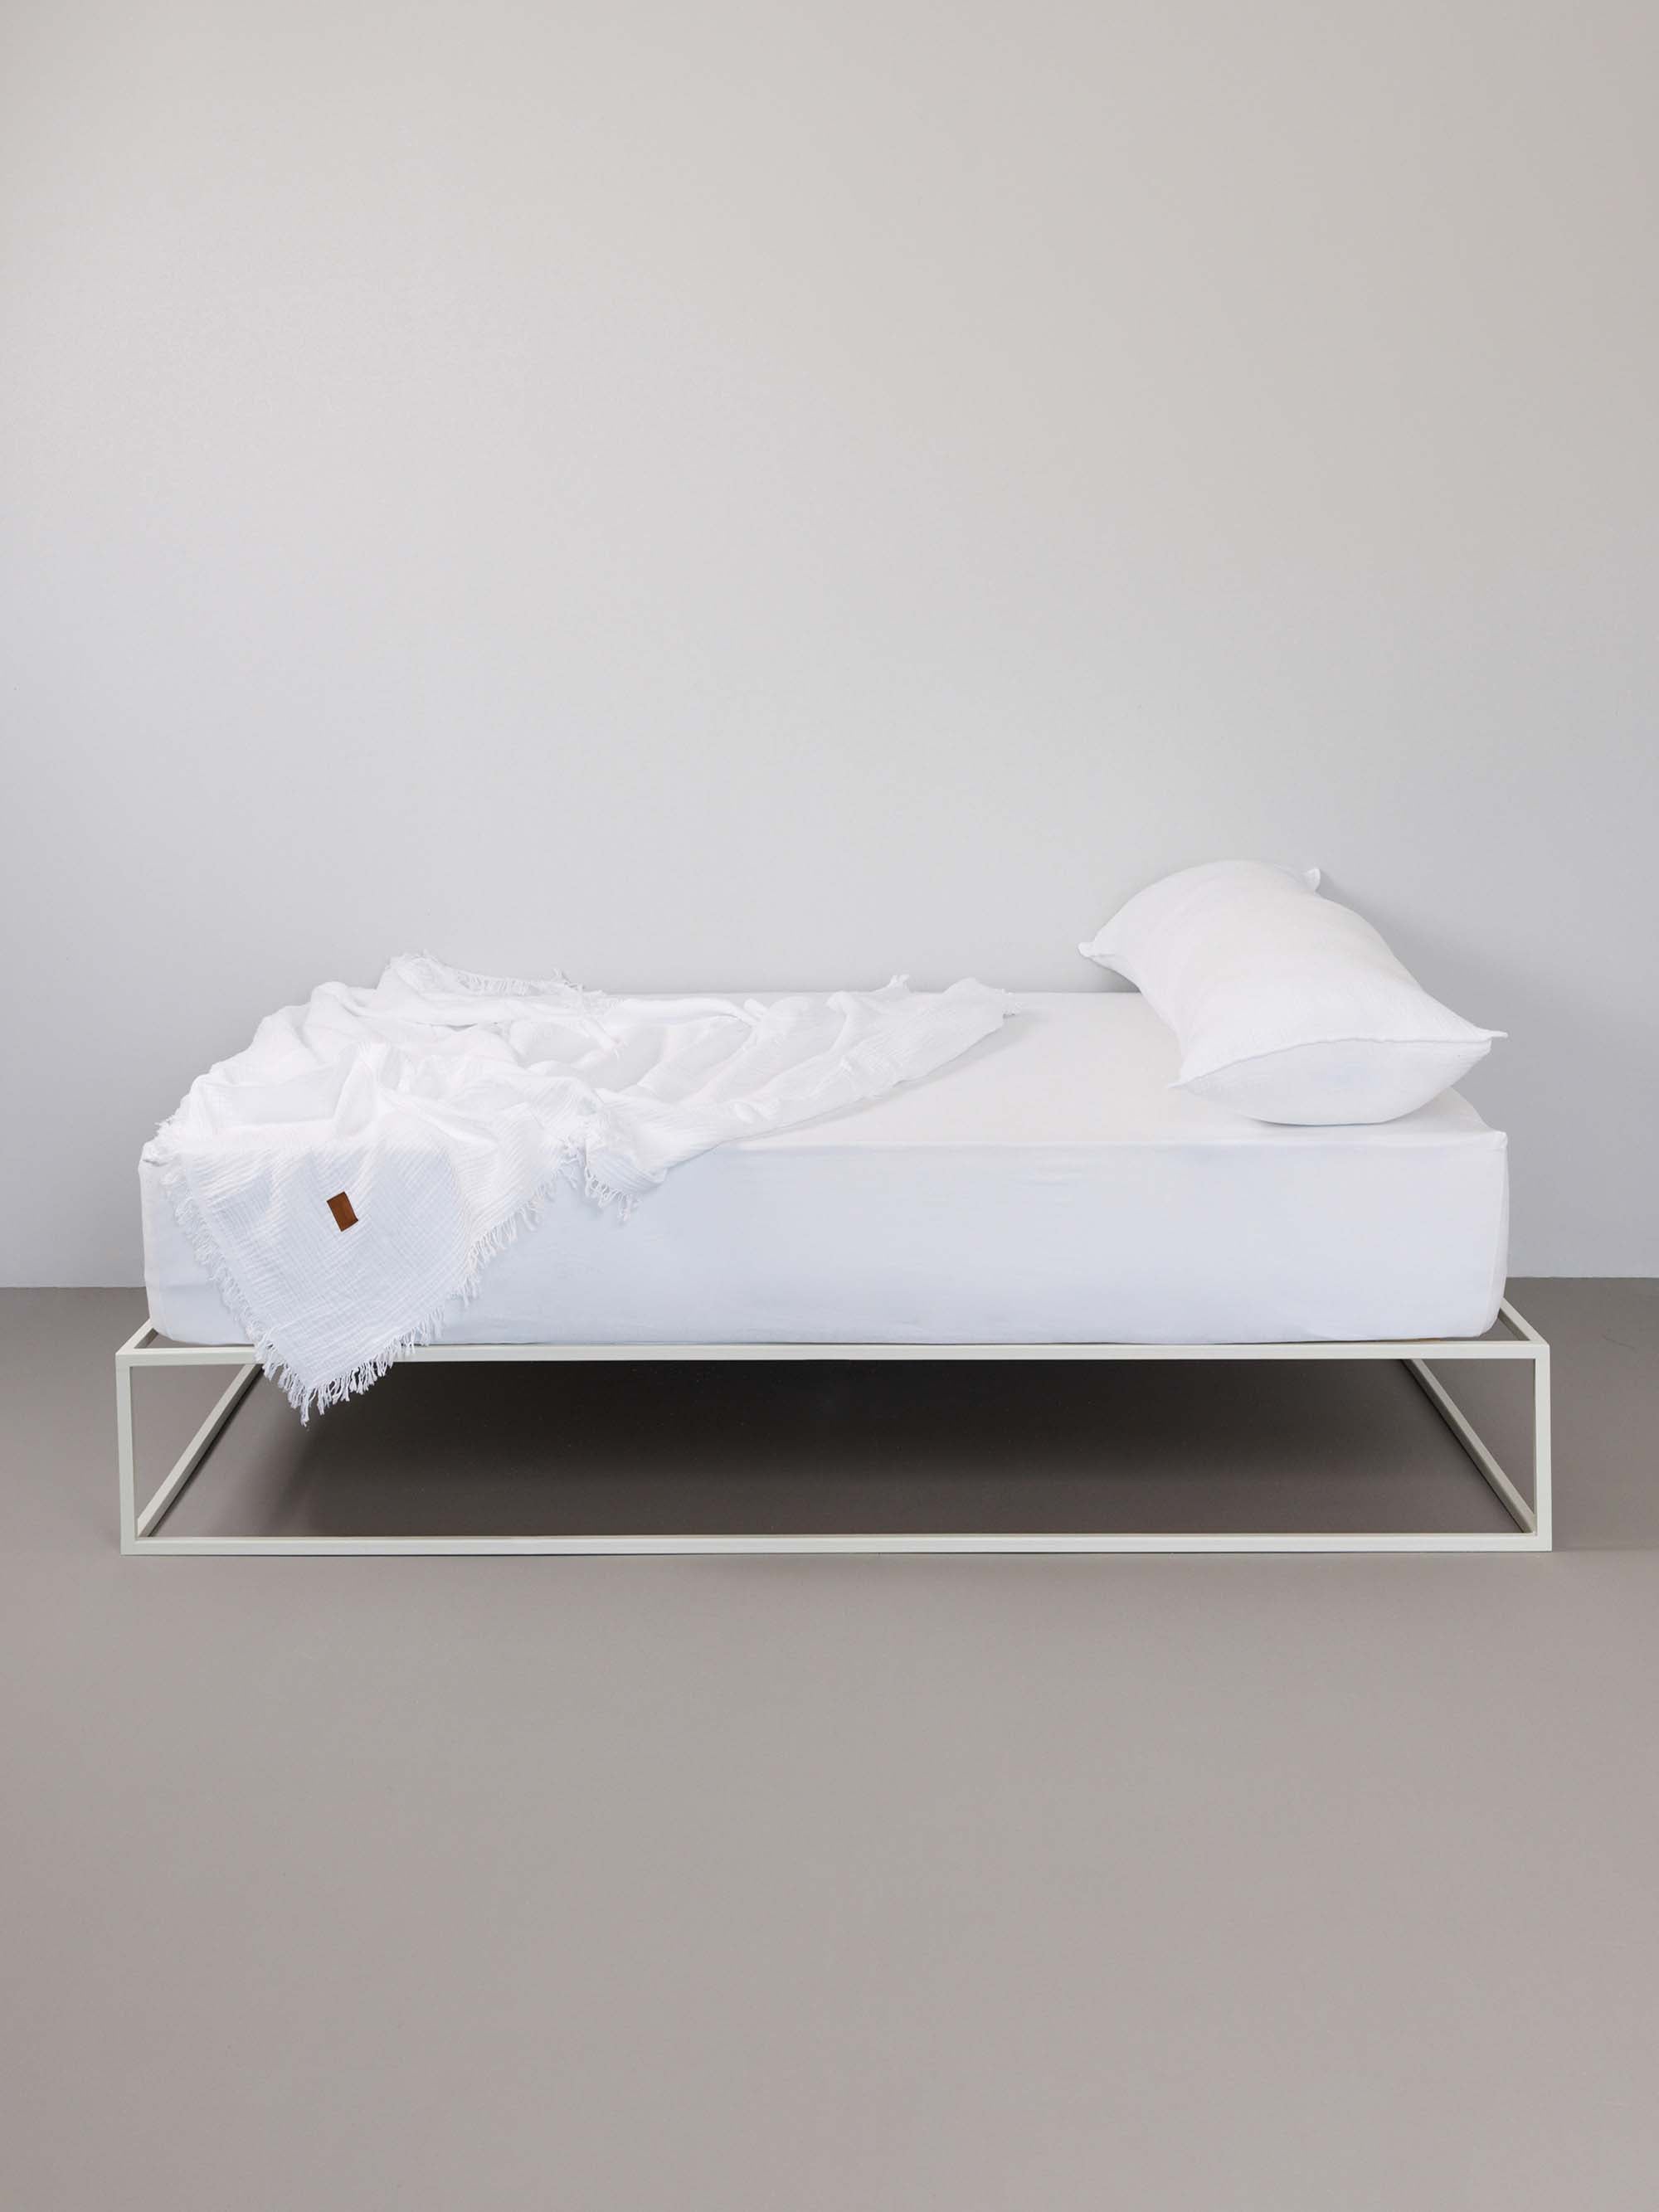 מיטת ברזל לבנה עם סדין, כרית וציפית לכרית ארוכה בצבע לבן